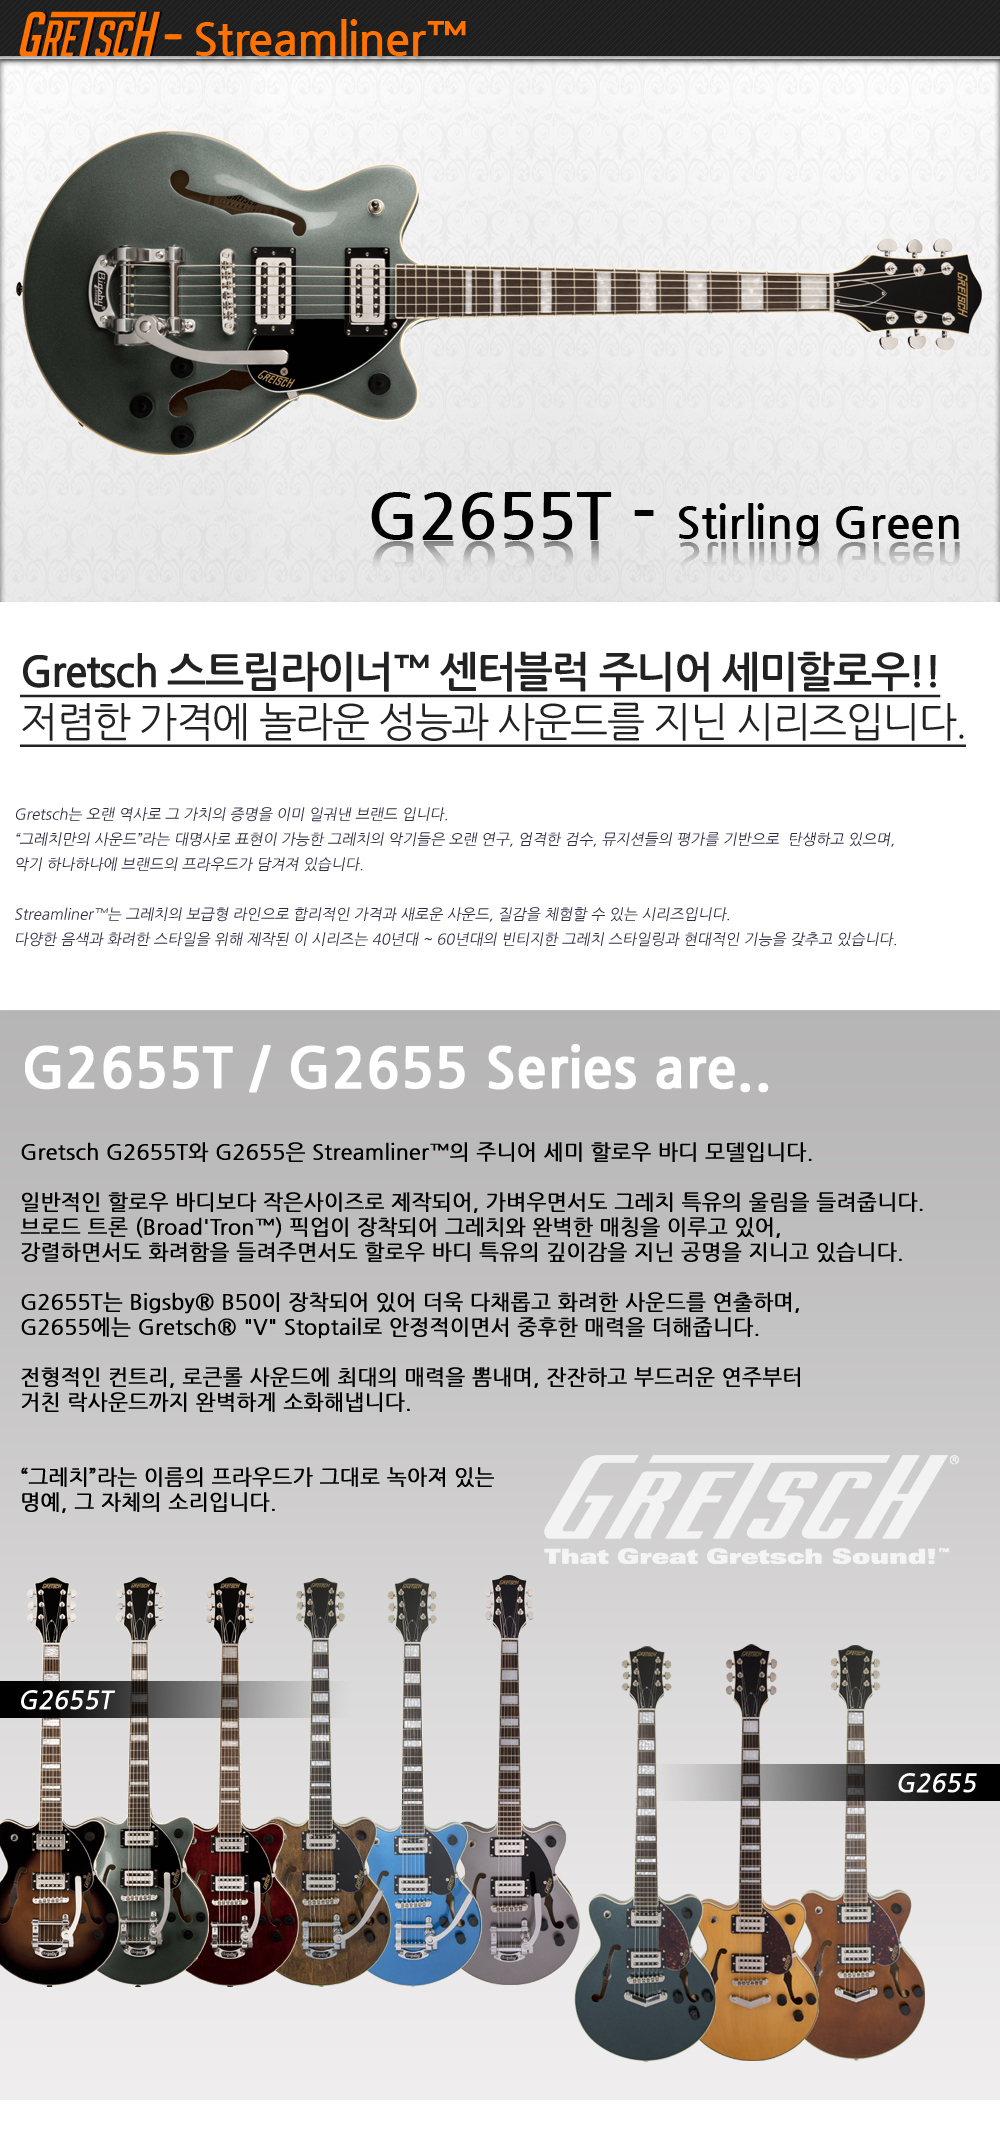 Gretsch-G2655T-StirlingGreen_1_175831.jpg